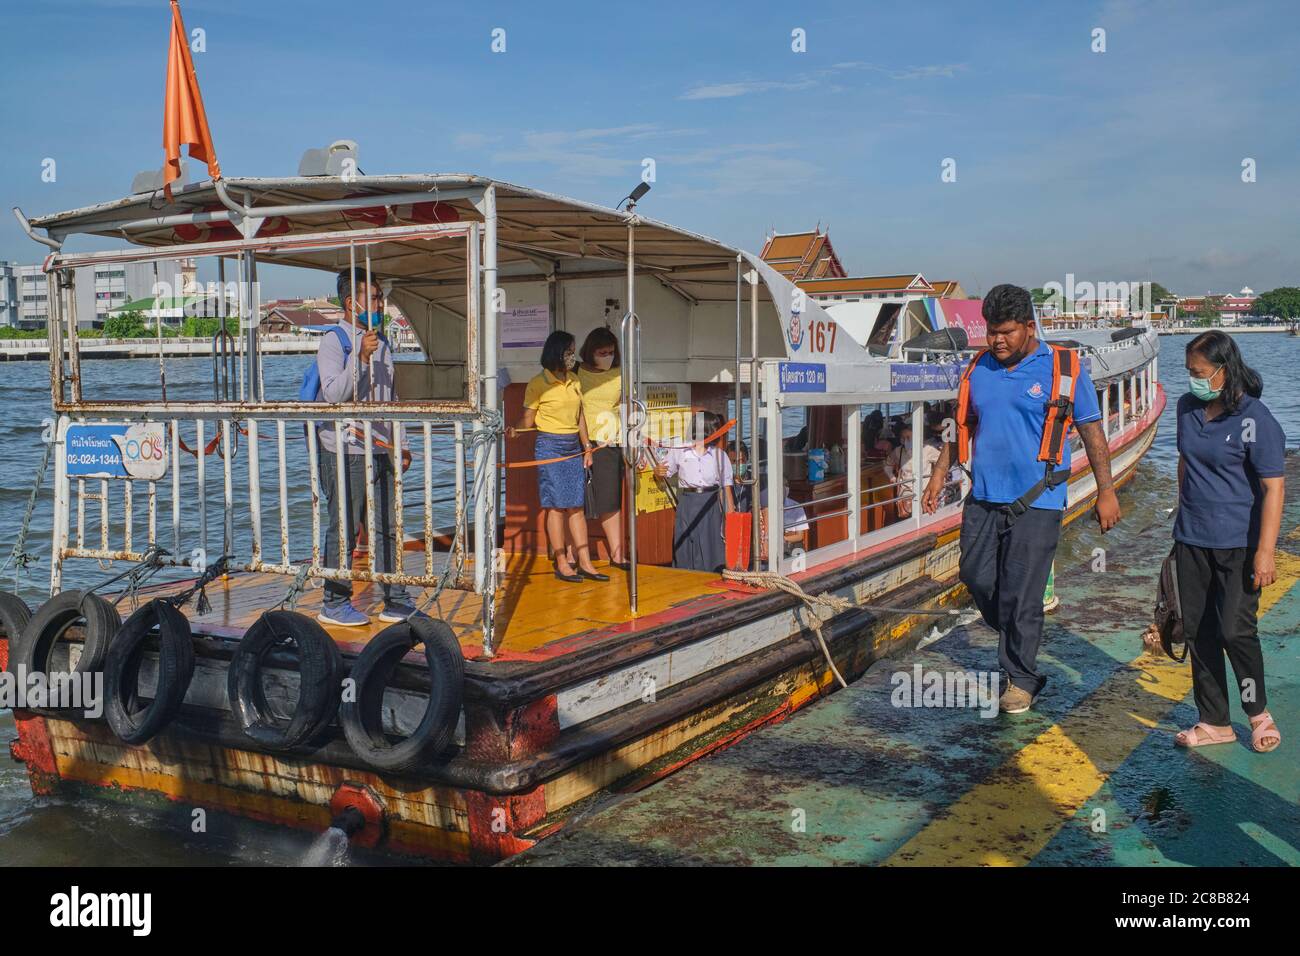 An express boat plying the Chao Phraya River in Bangkok, Thailand, docking at Atsadang / Yodpiman Pier. Stock Photo